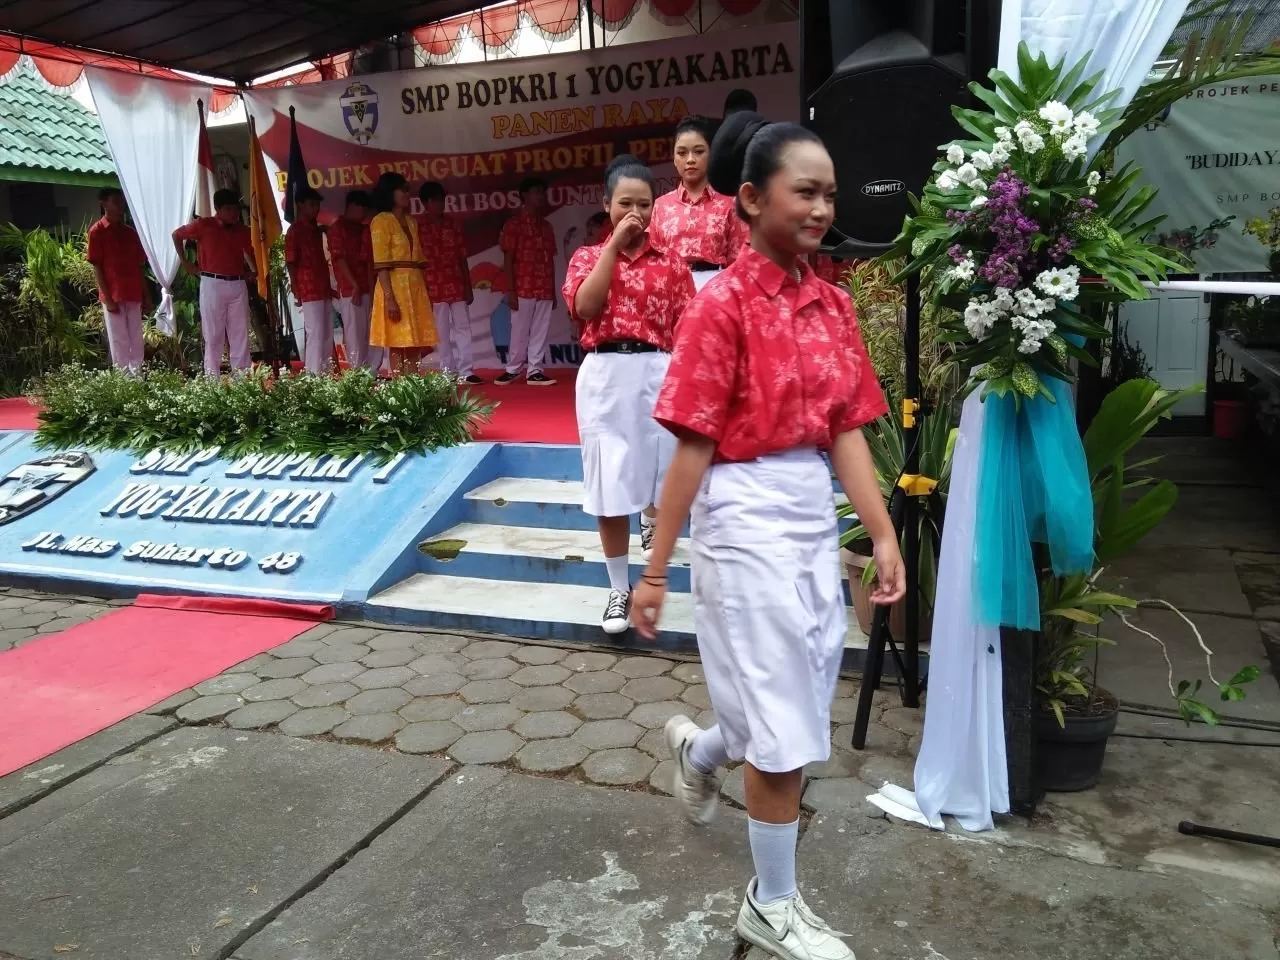 Siswa peragakan seragam batik buatan sendiri (Warisman)